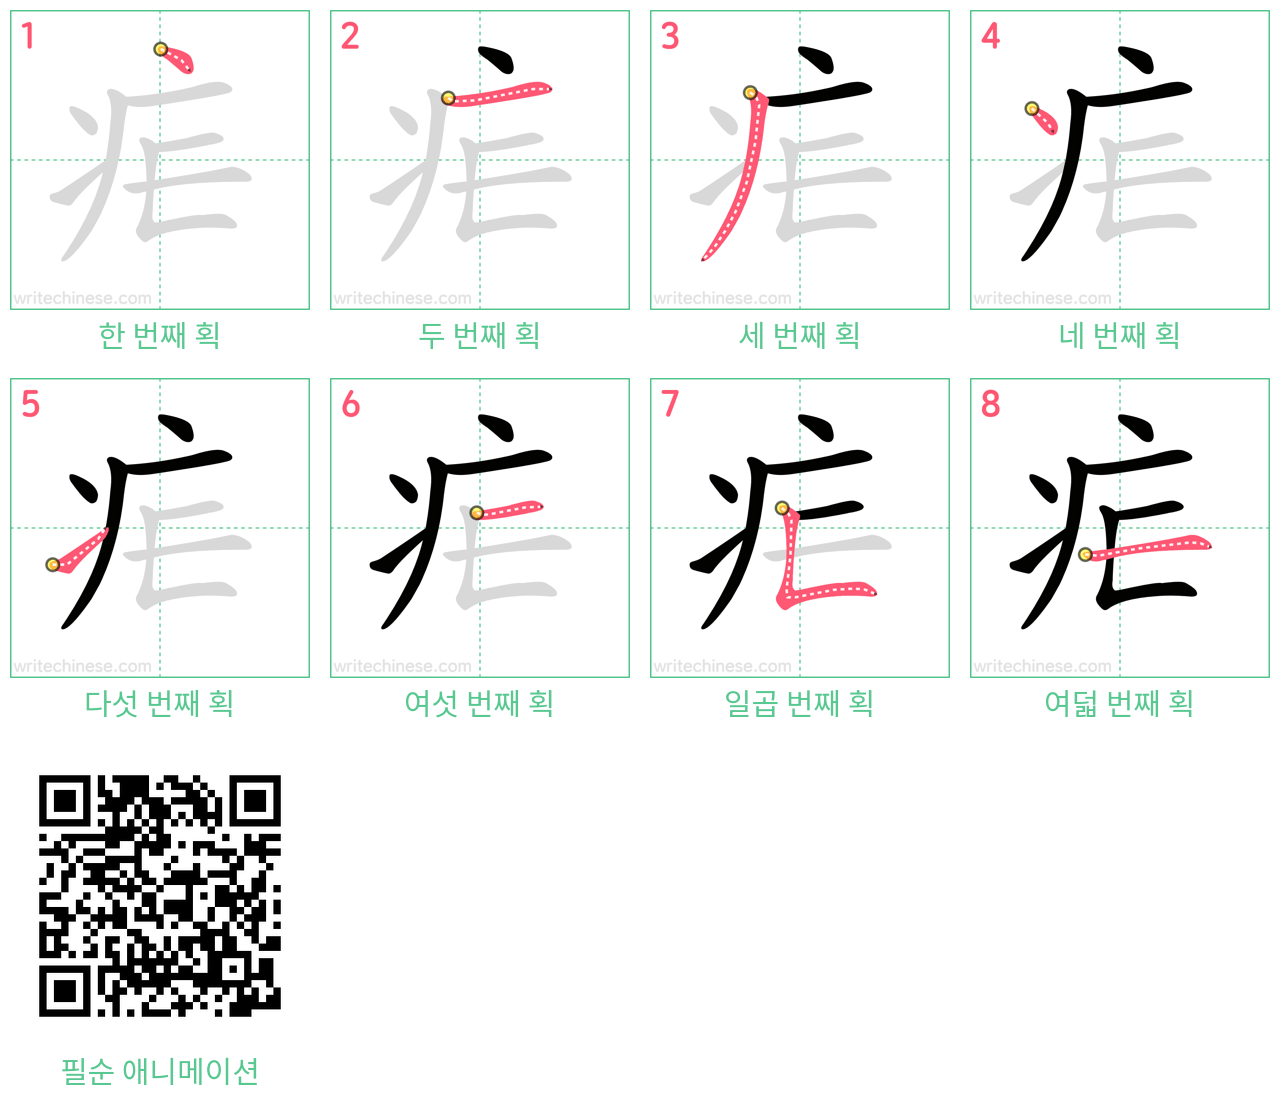 疟 step-by-step stroke order diagrams